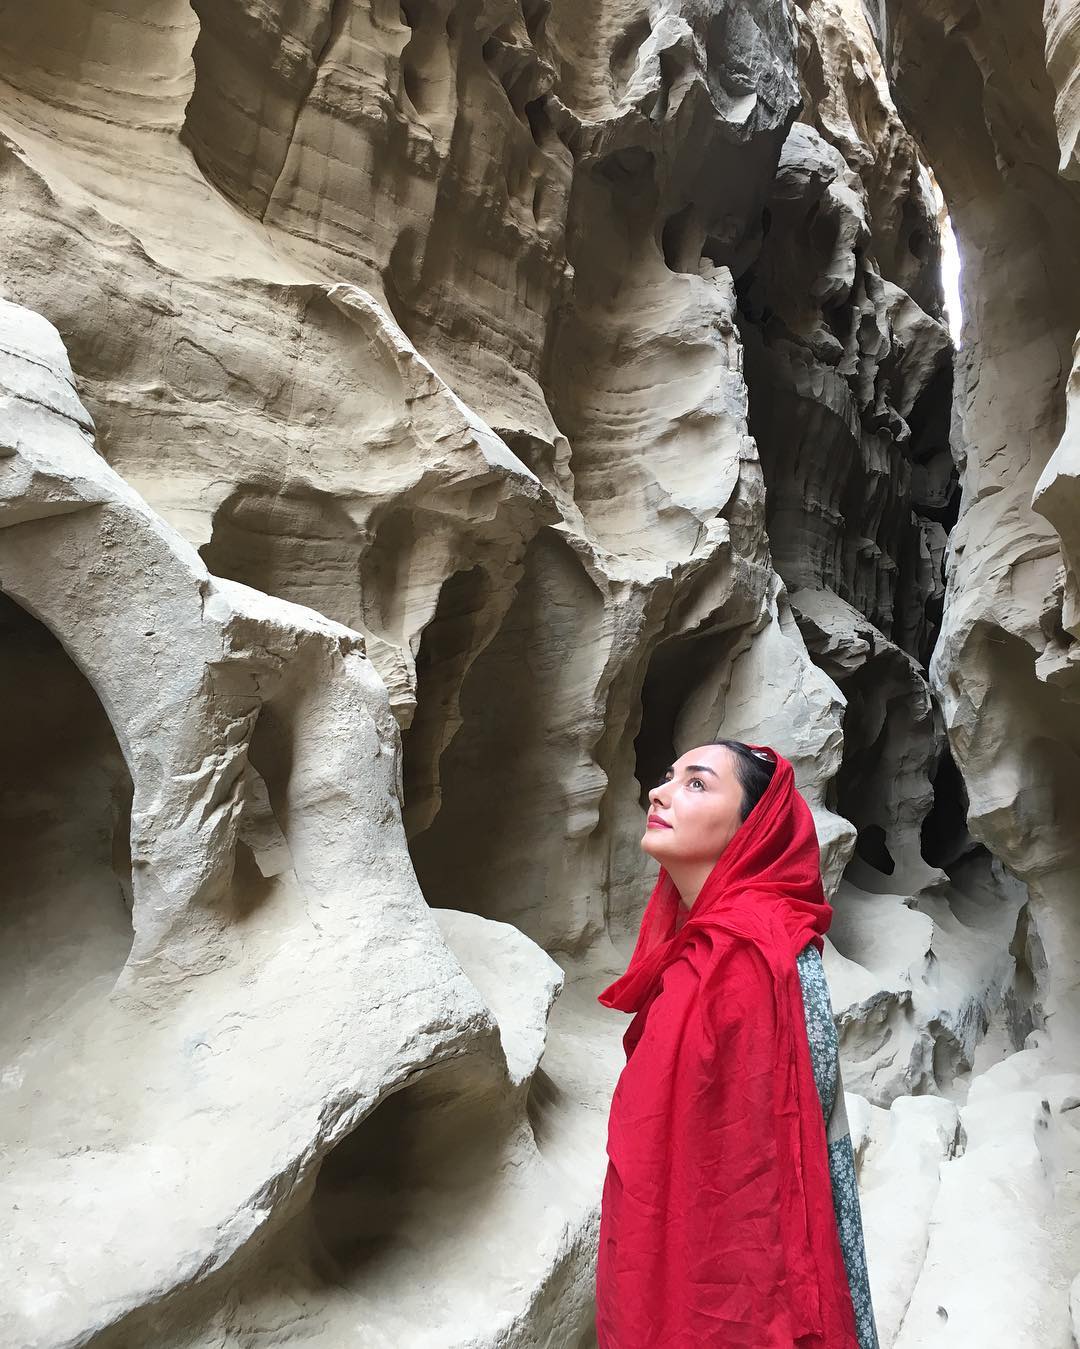 عکس جديد هانیه توسلی با لباس قرمز در چاهکوه قشم